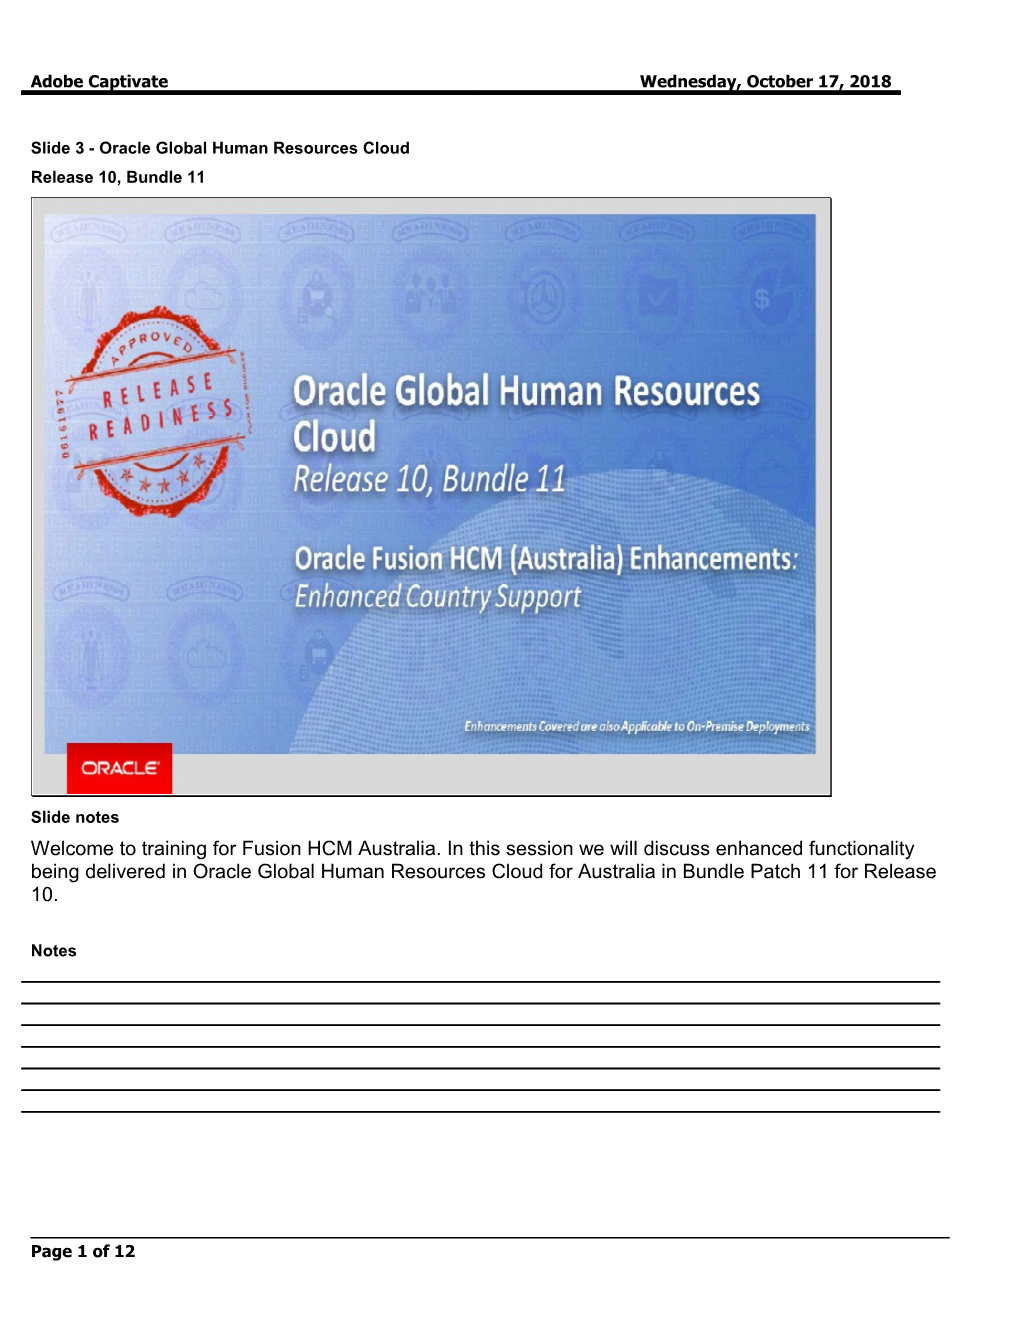 Slide 3 - Oracle Global Human Resources Cloud